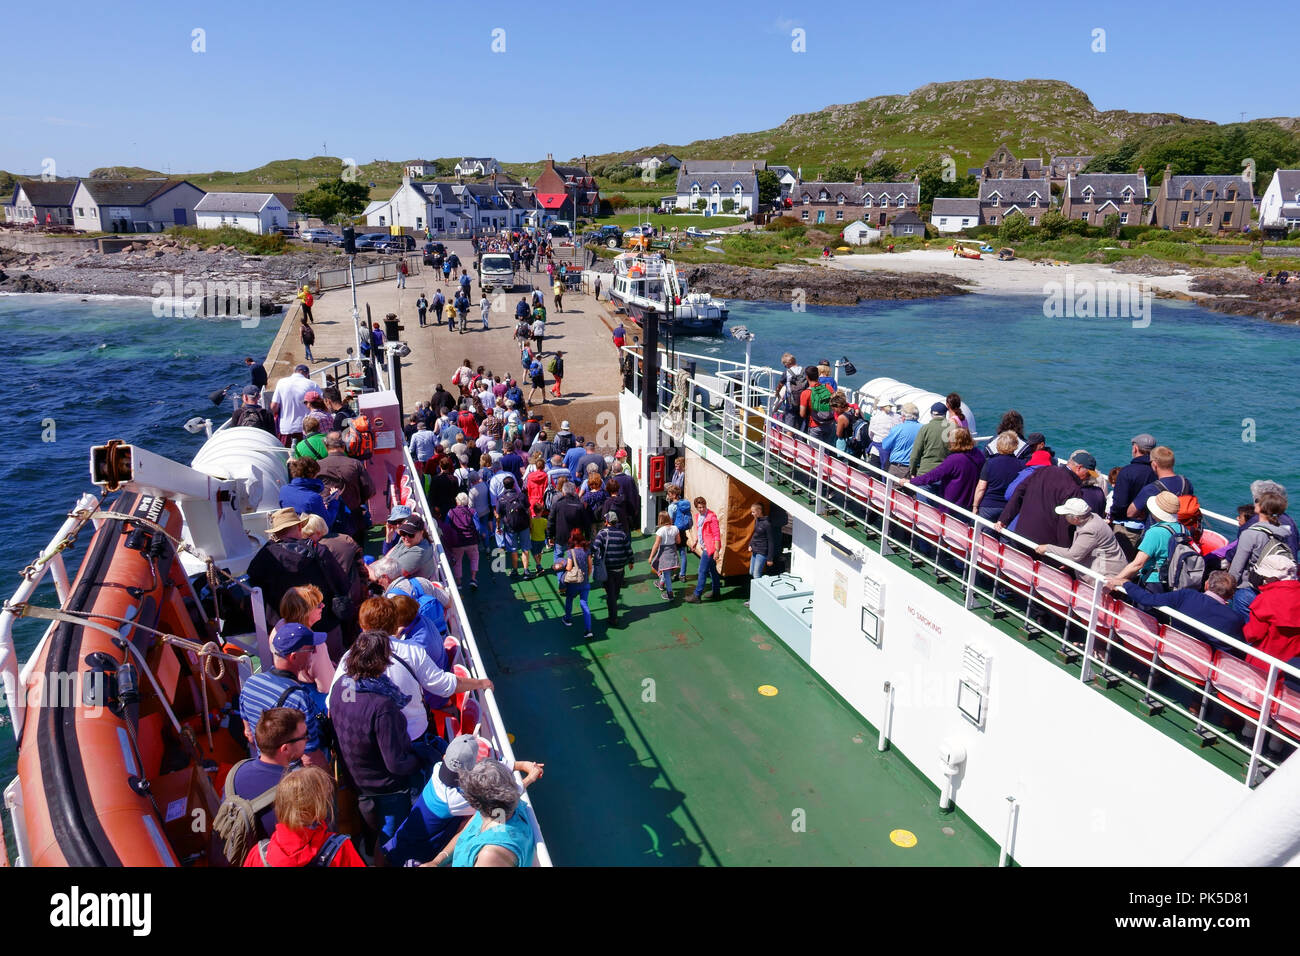 Traghetto CalMac arrivando a Iona da Fionnphort sull'Isle of Mull Foto Stock